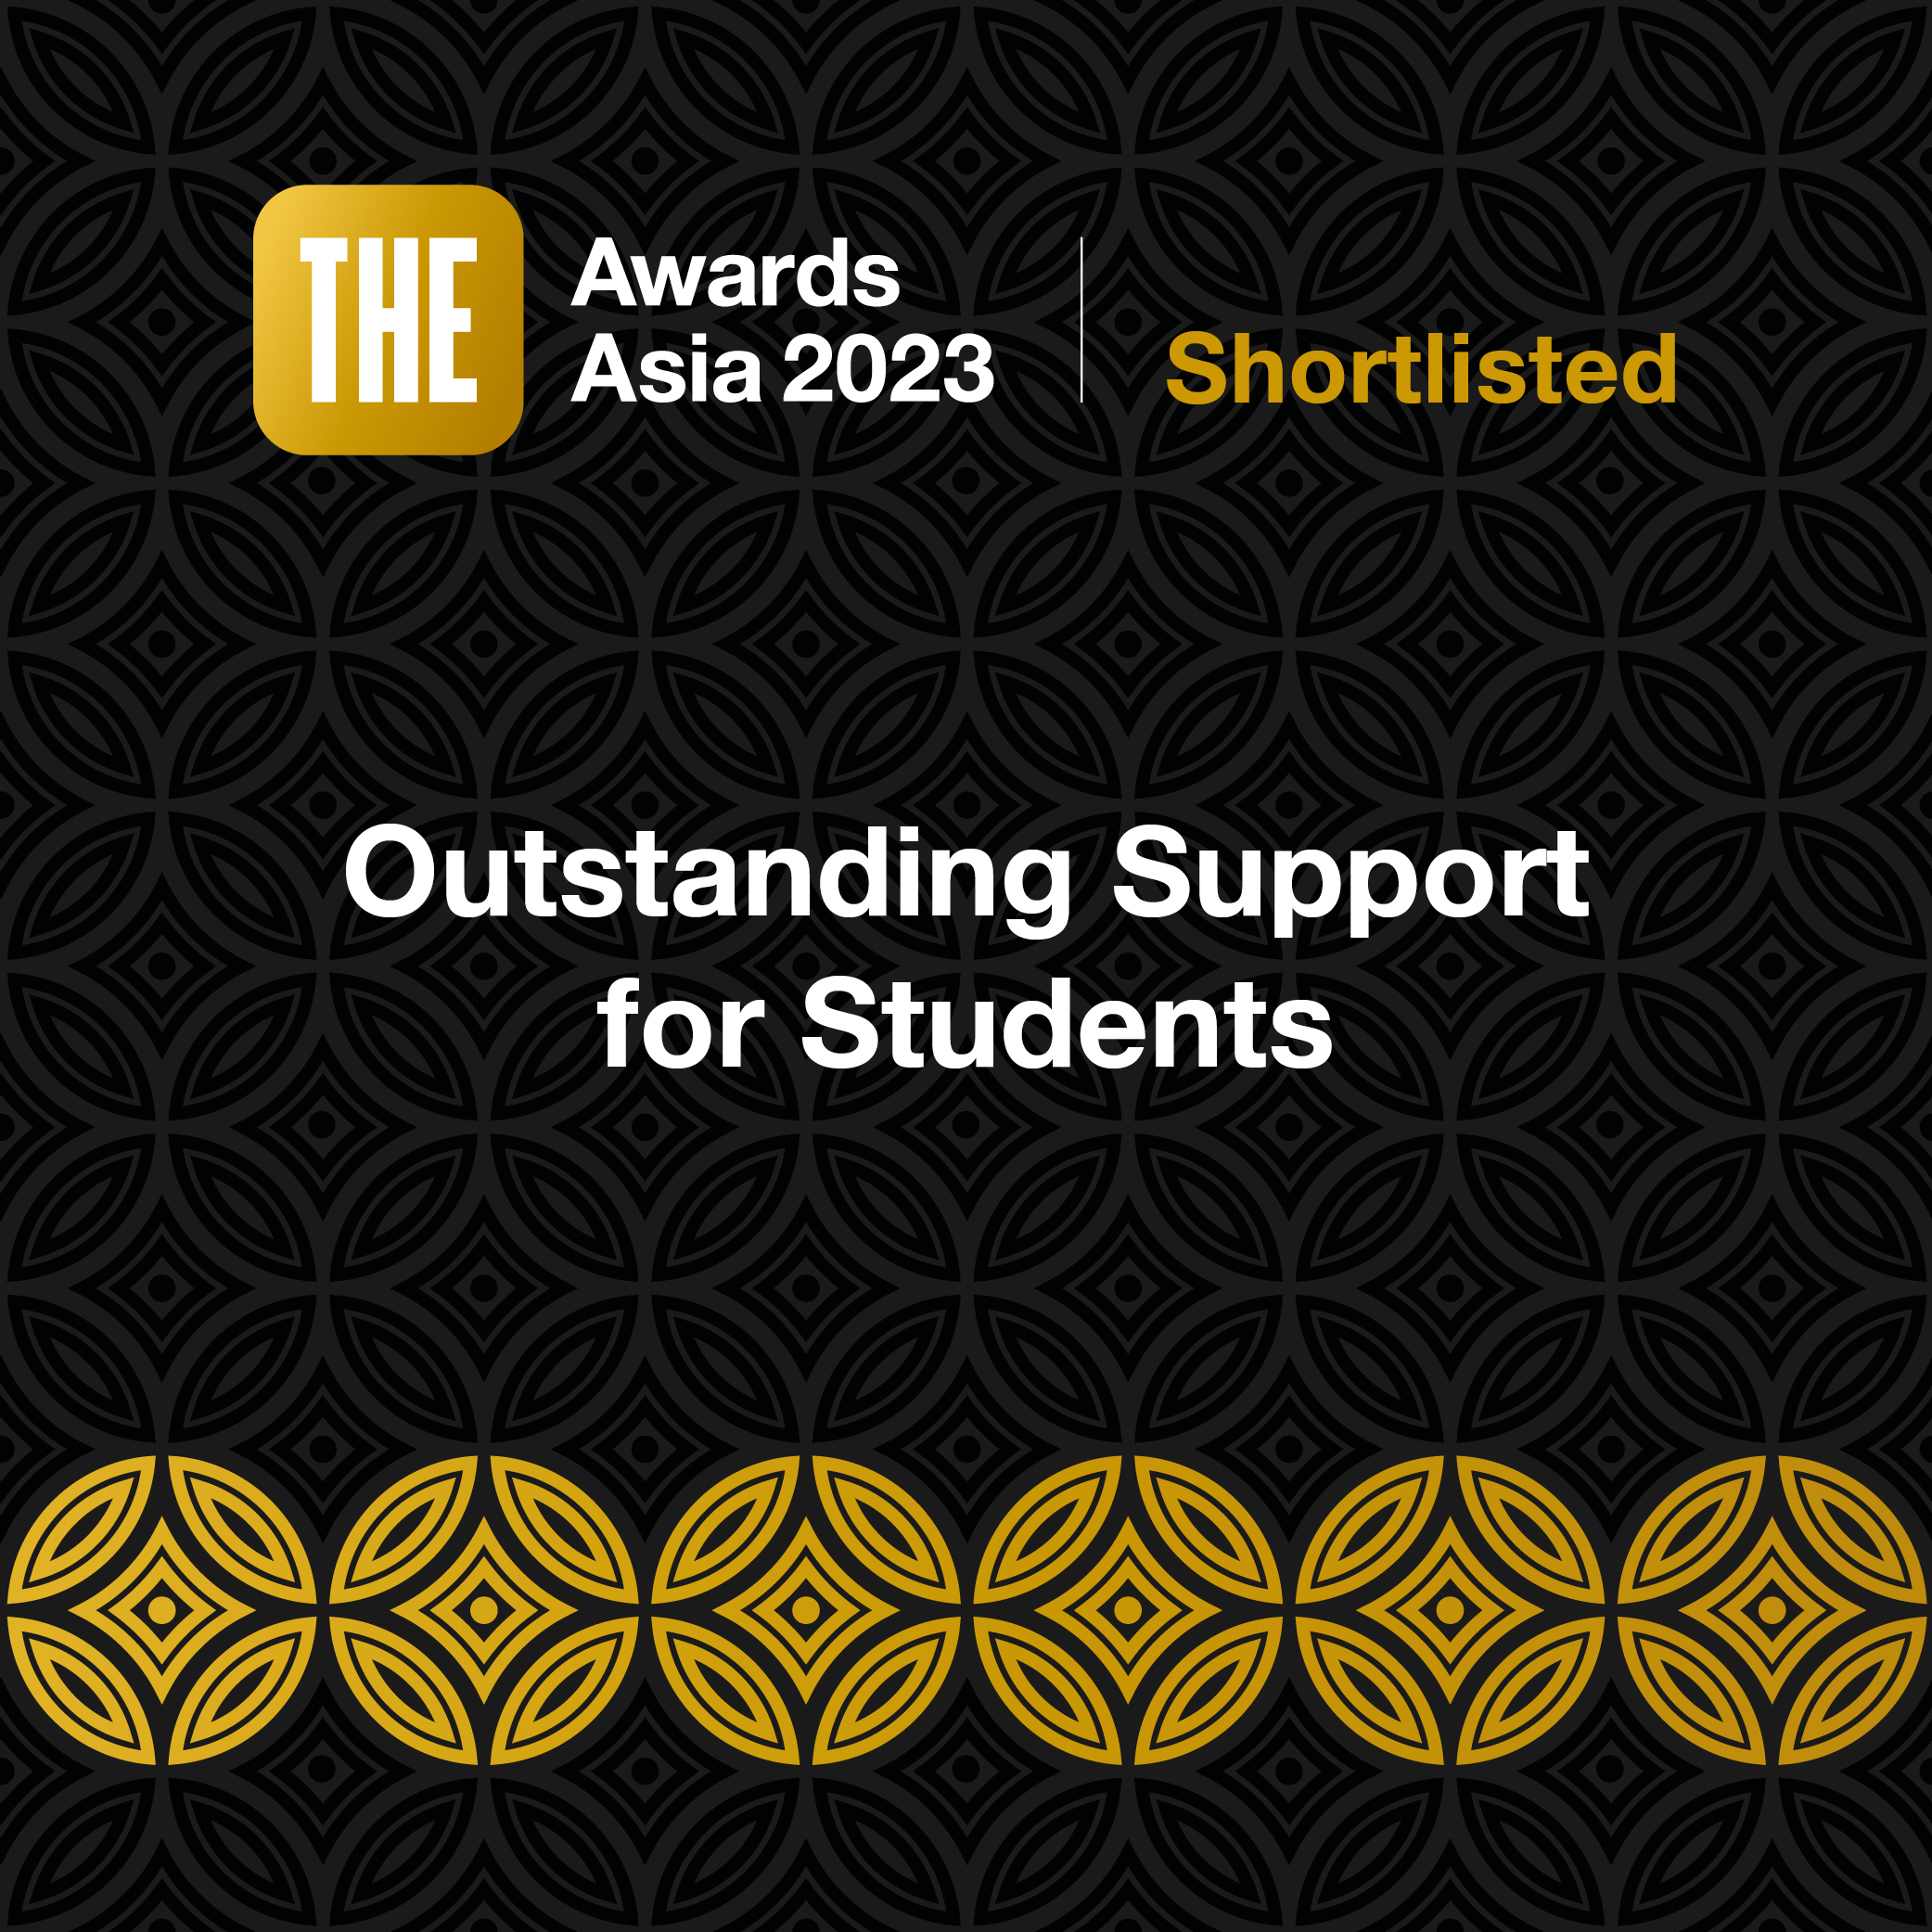 本学が「THE Awards Asia 2023」の最終選考候補に選出